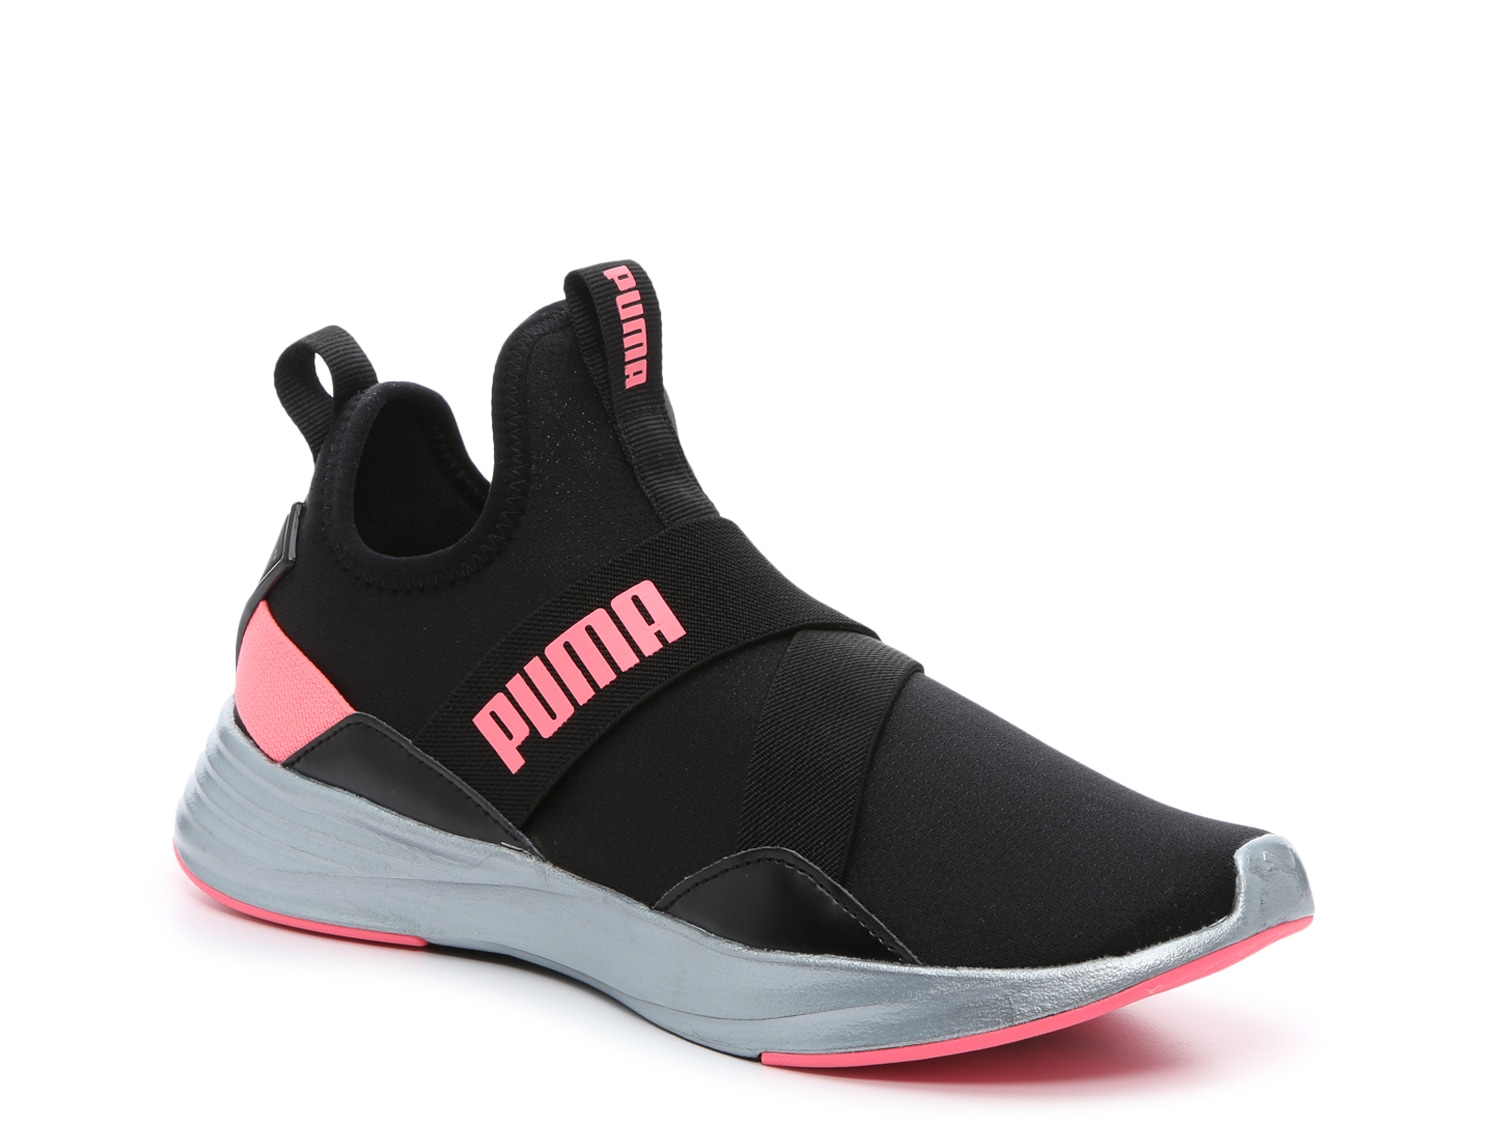 Puma Radiate Training Shoe - Women's - Free Shipping | DSW